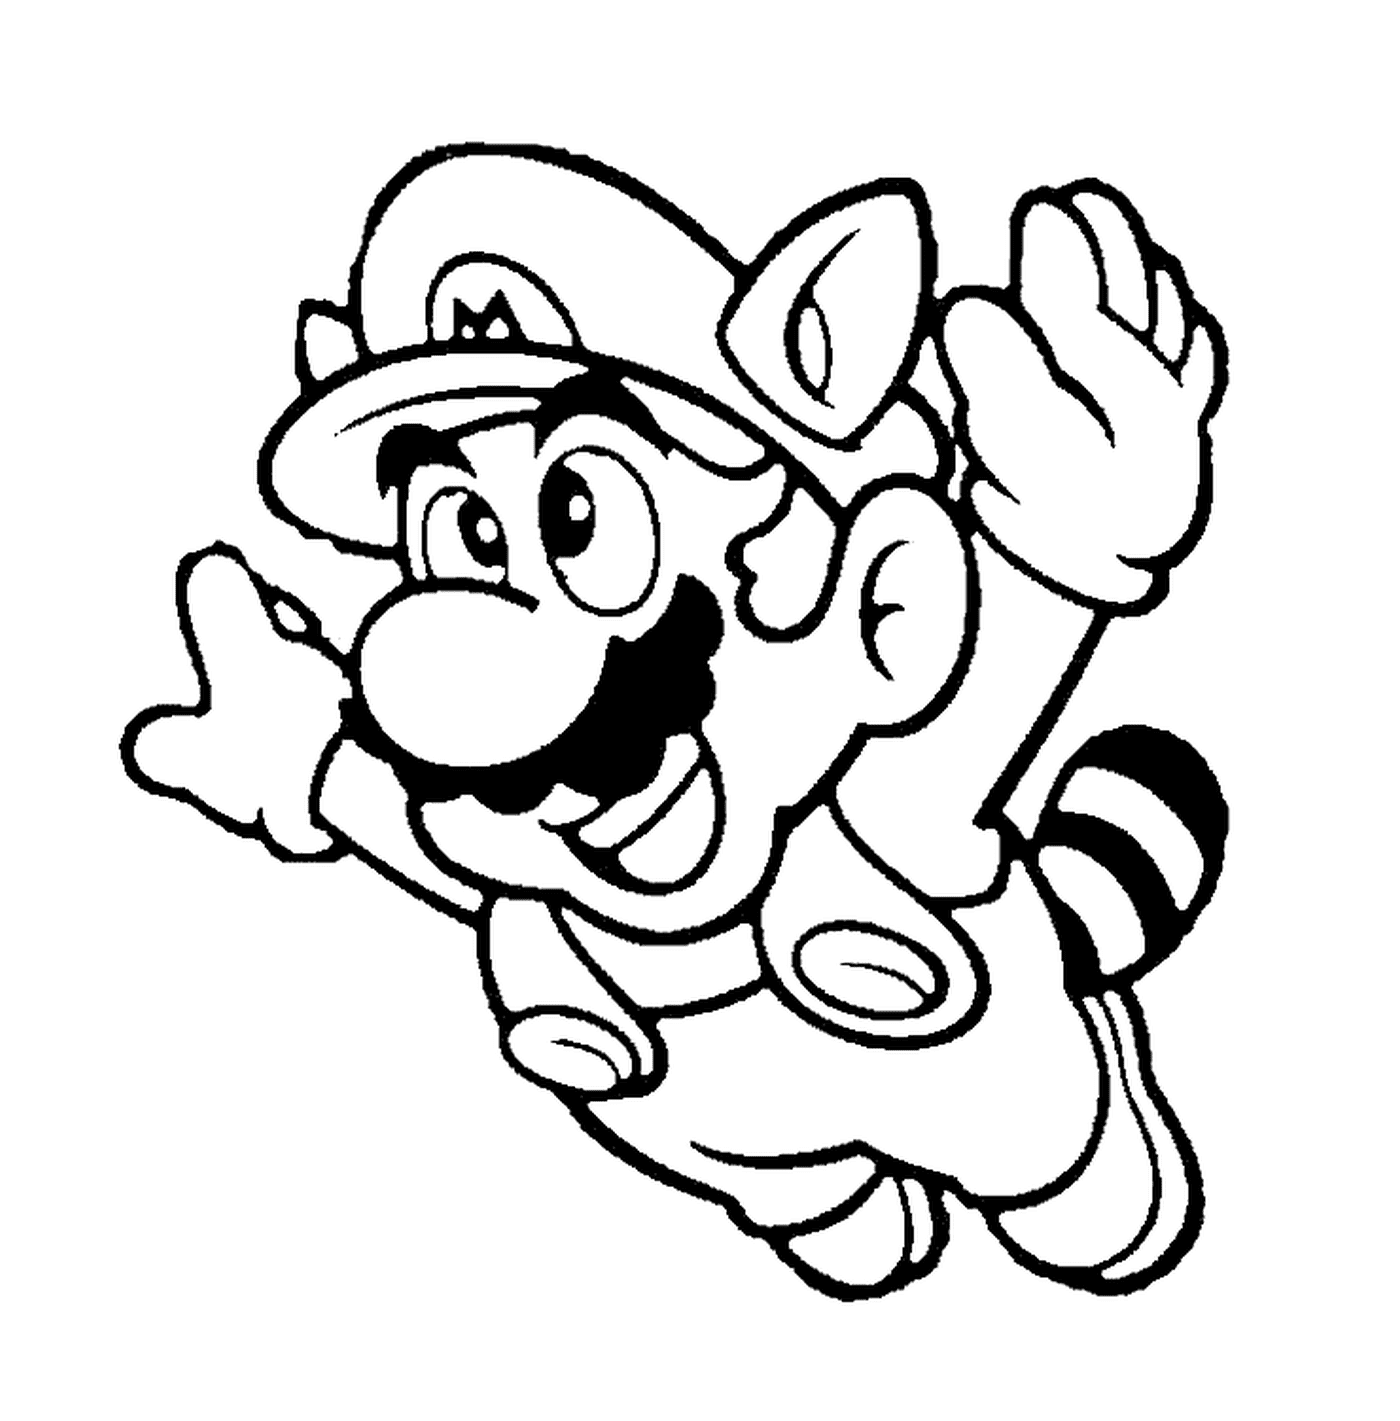  Mario in coloring raccoon 